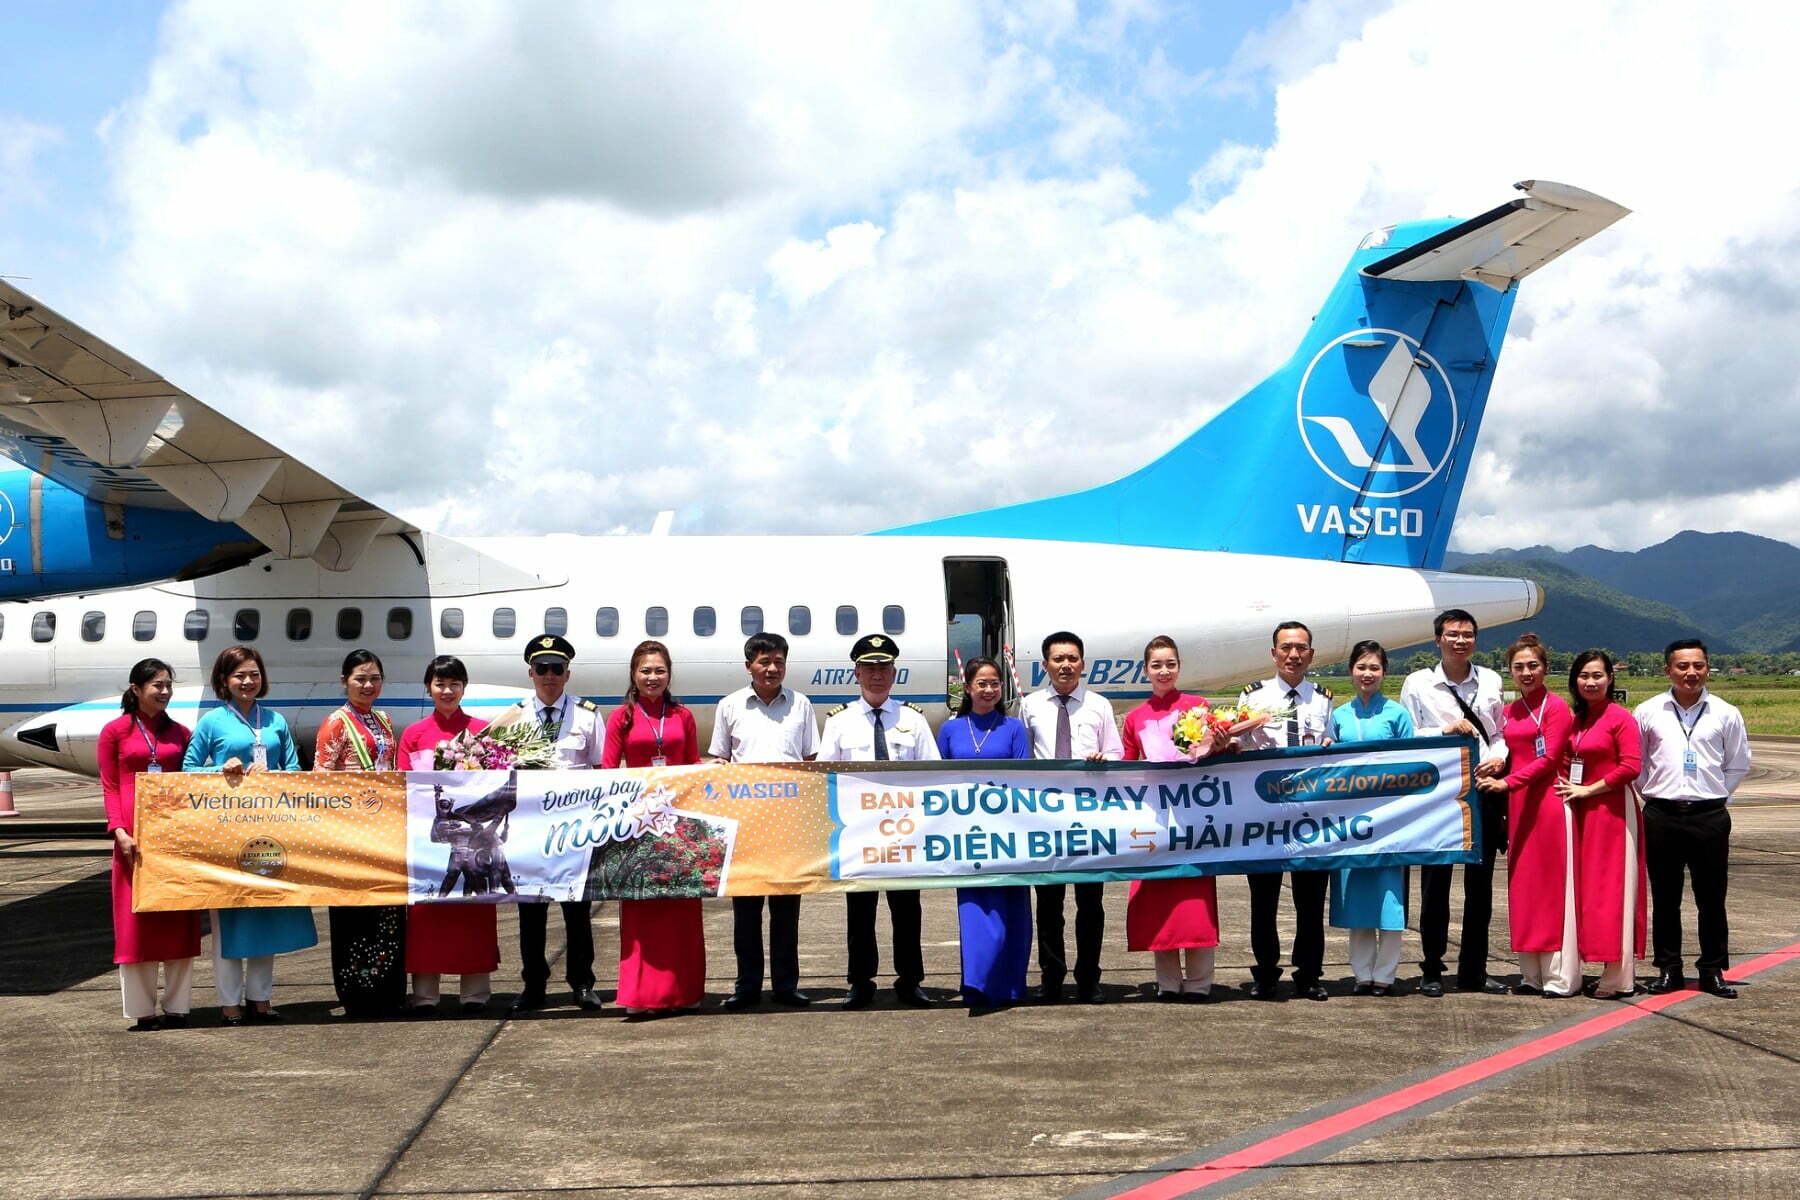 VNA khai trương 2 đường bay mới Đà Lạt - Phú Quốc và Điện Biên - Hải Phòng